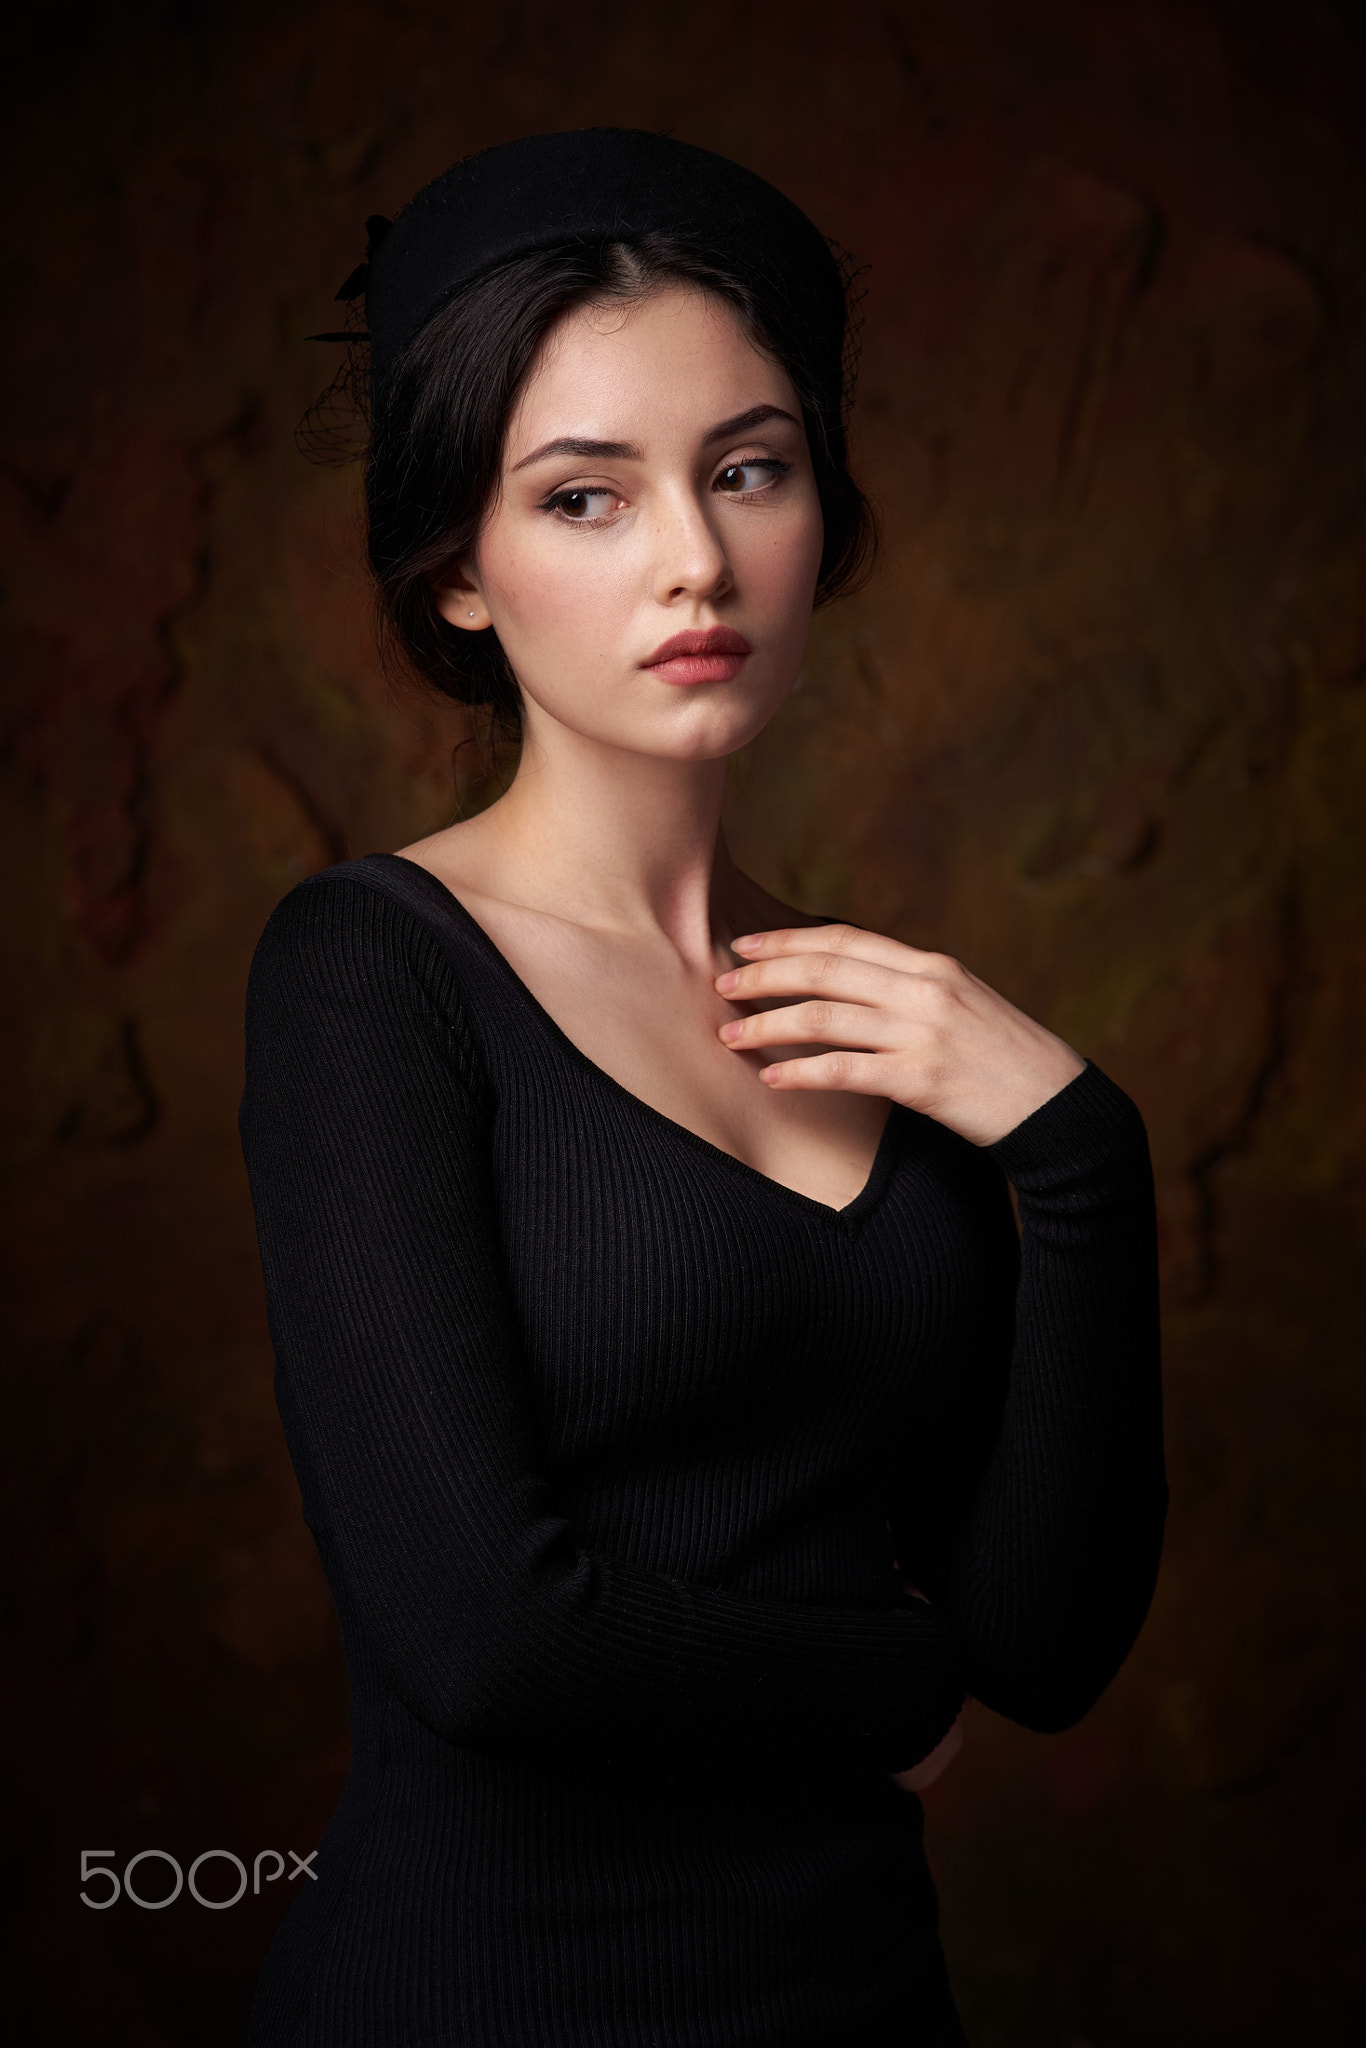 Alexander Vinogradov Women Hat Black Clothing Makeup Dark Hair Looking Away 1366x2048